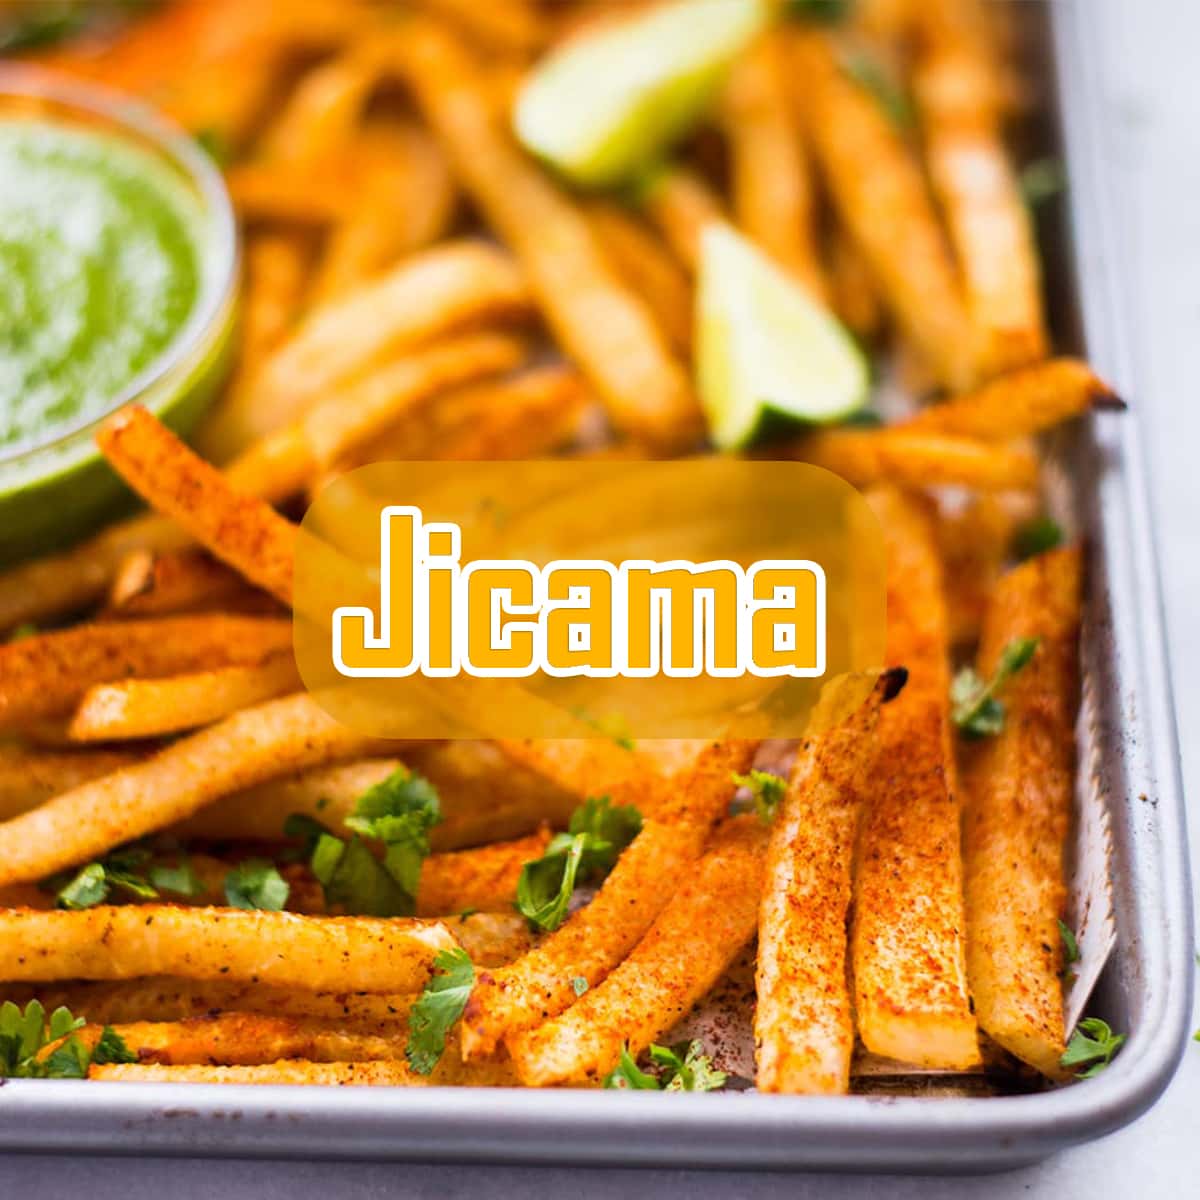 What is jicama